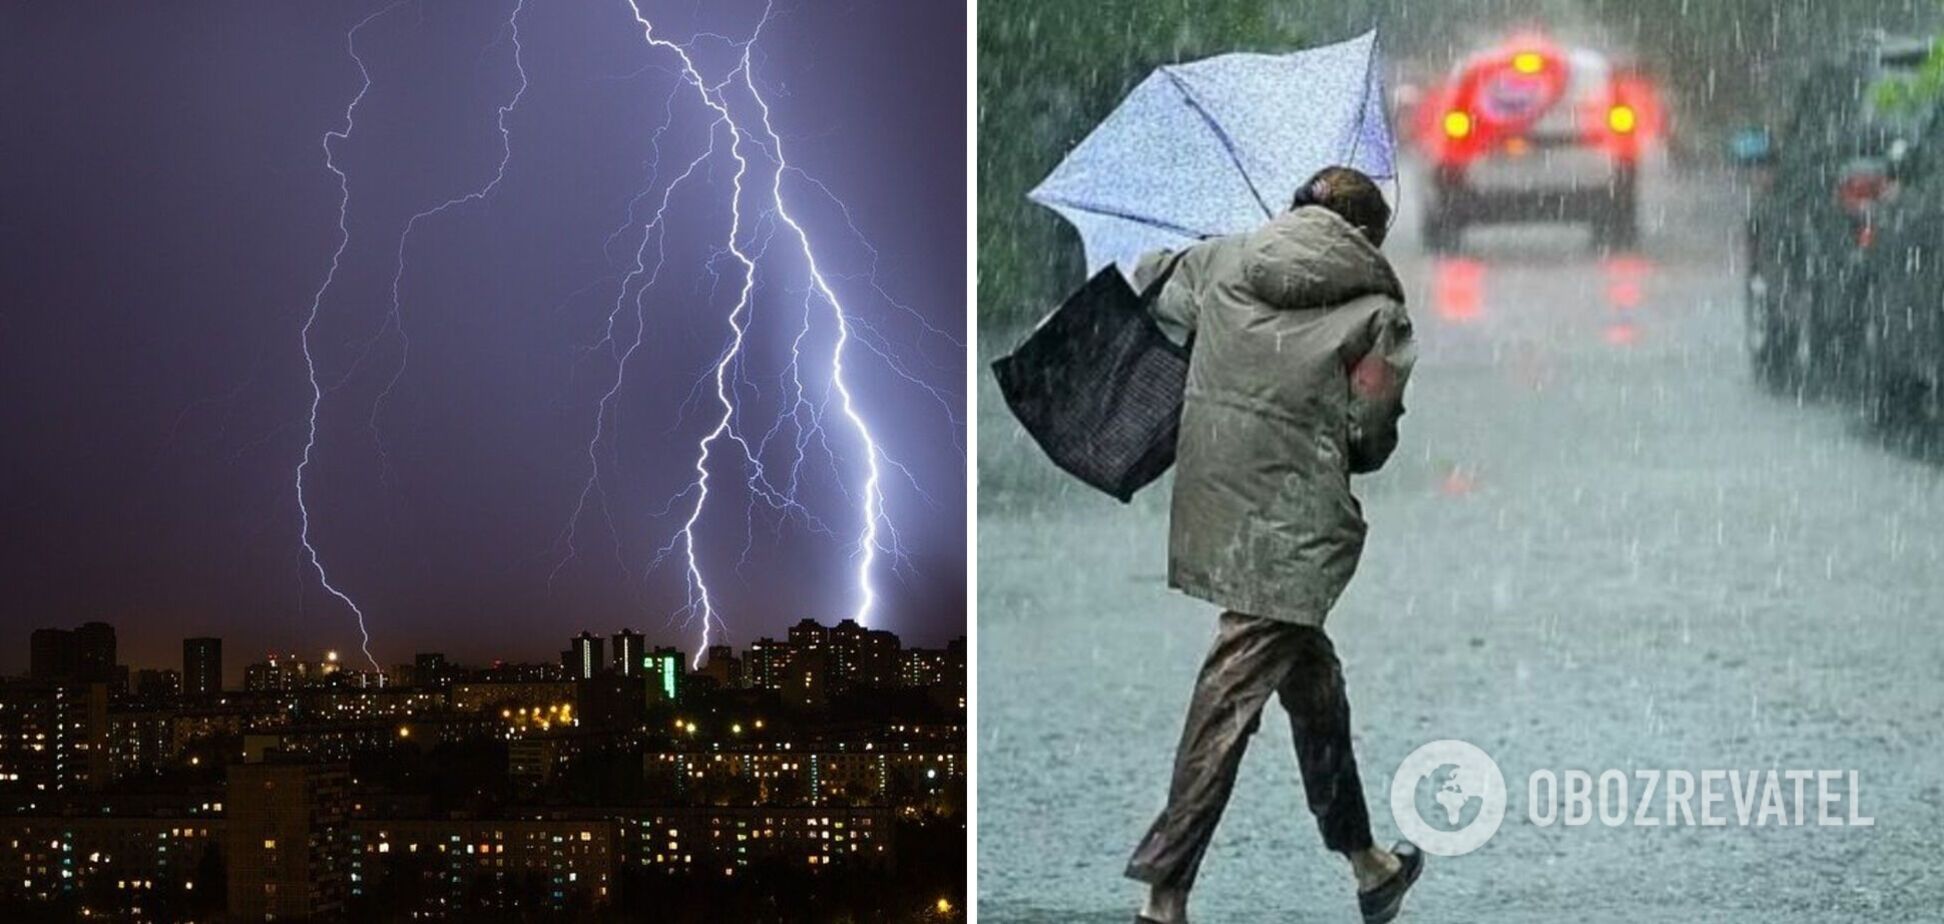 Украинцев предупредили о мощных ливнях и шторме в воскресенье: какие регионы затронет непогода. Карта